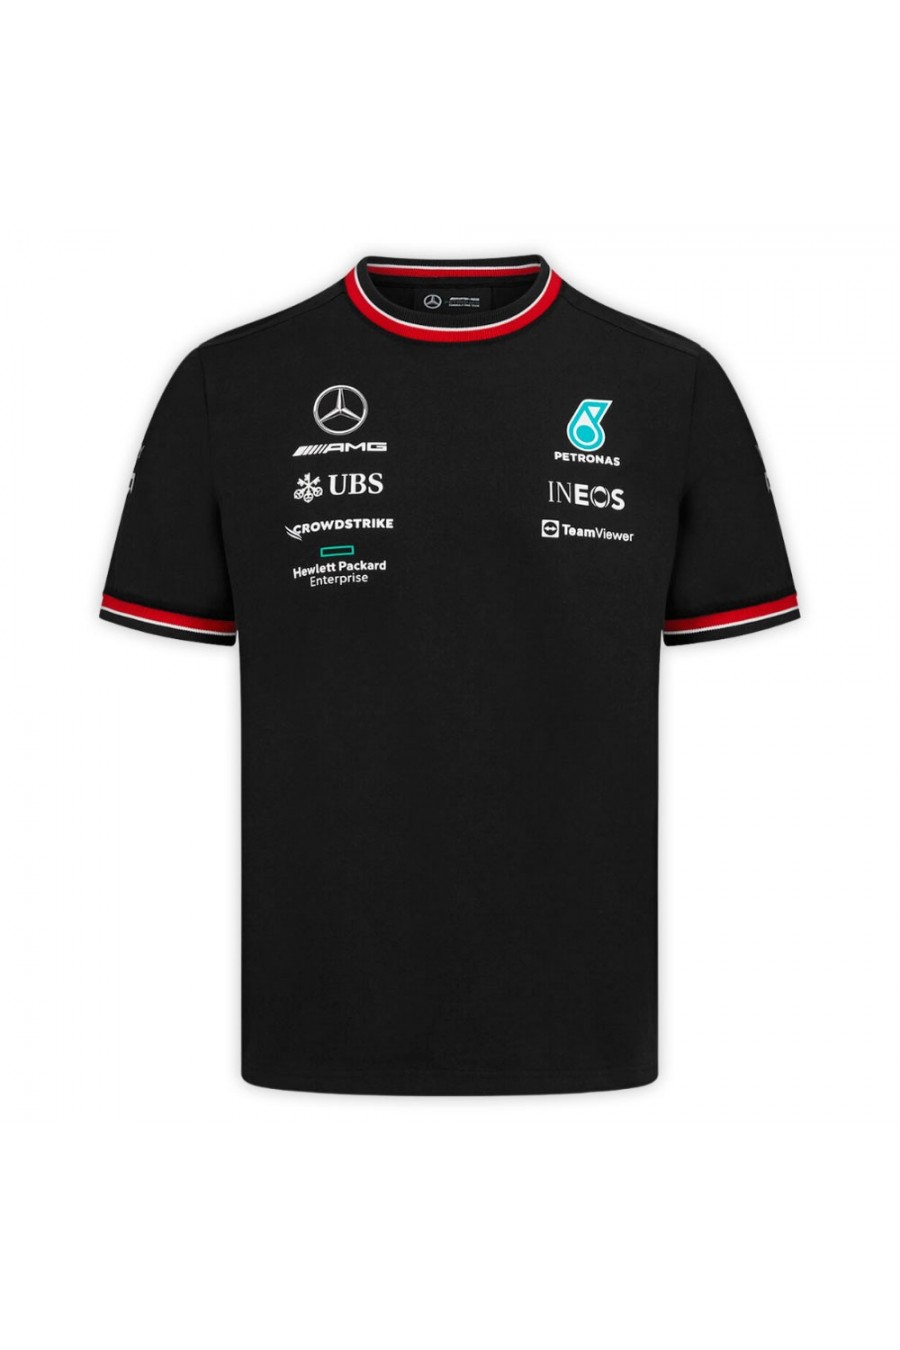 Maglietta da bambino Mercedes AMG F1 2022 nera